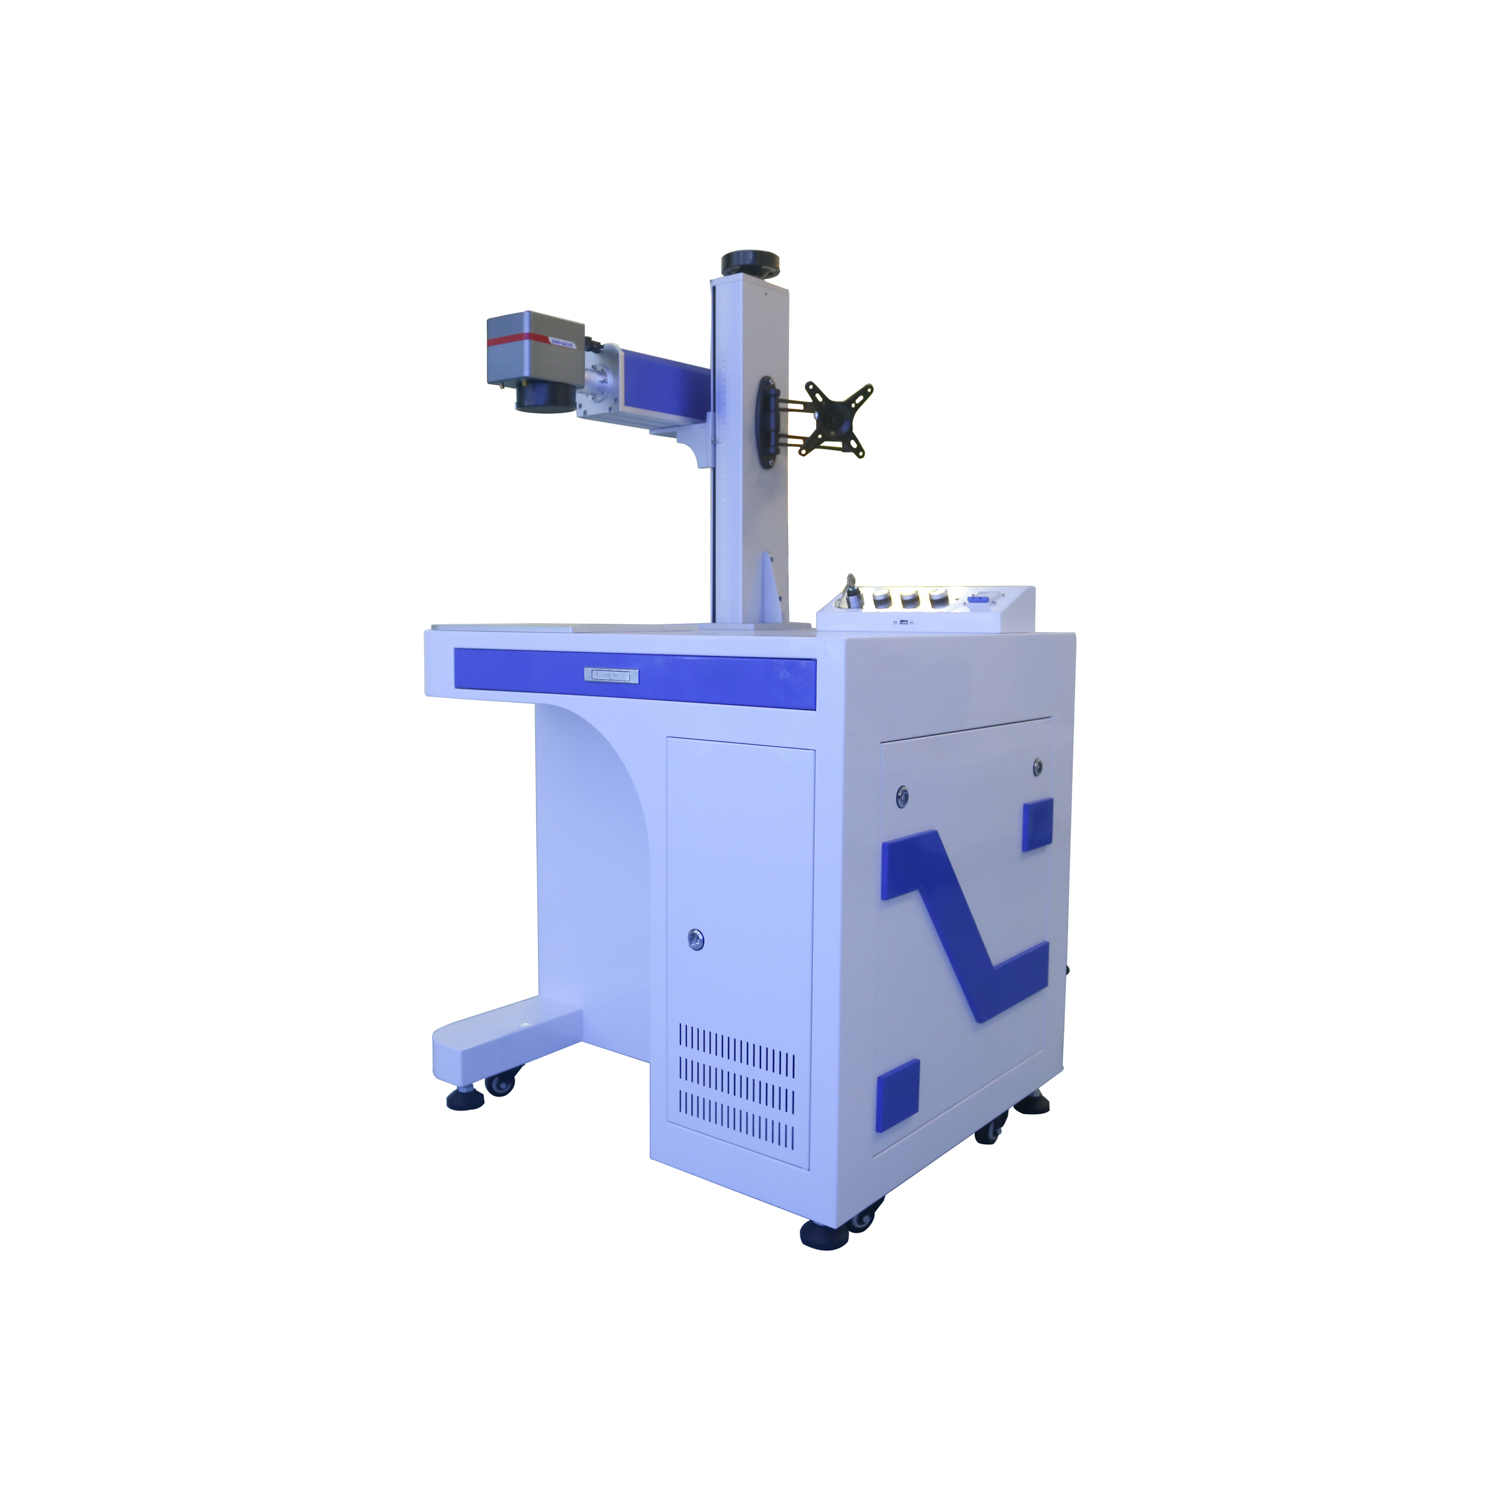 Tebur Laser Printing Machine 20w/30w/50w/70w/100w Fiber Laser Marking Machine Featured Image